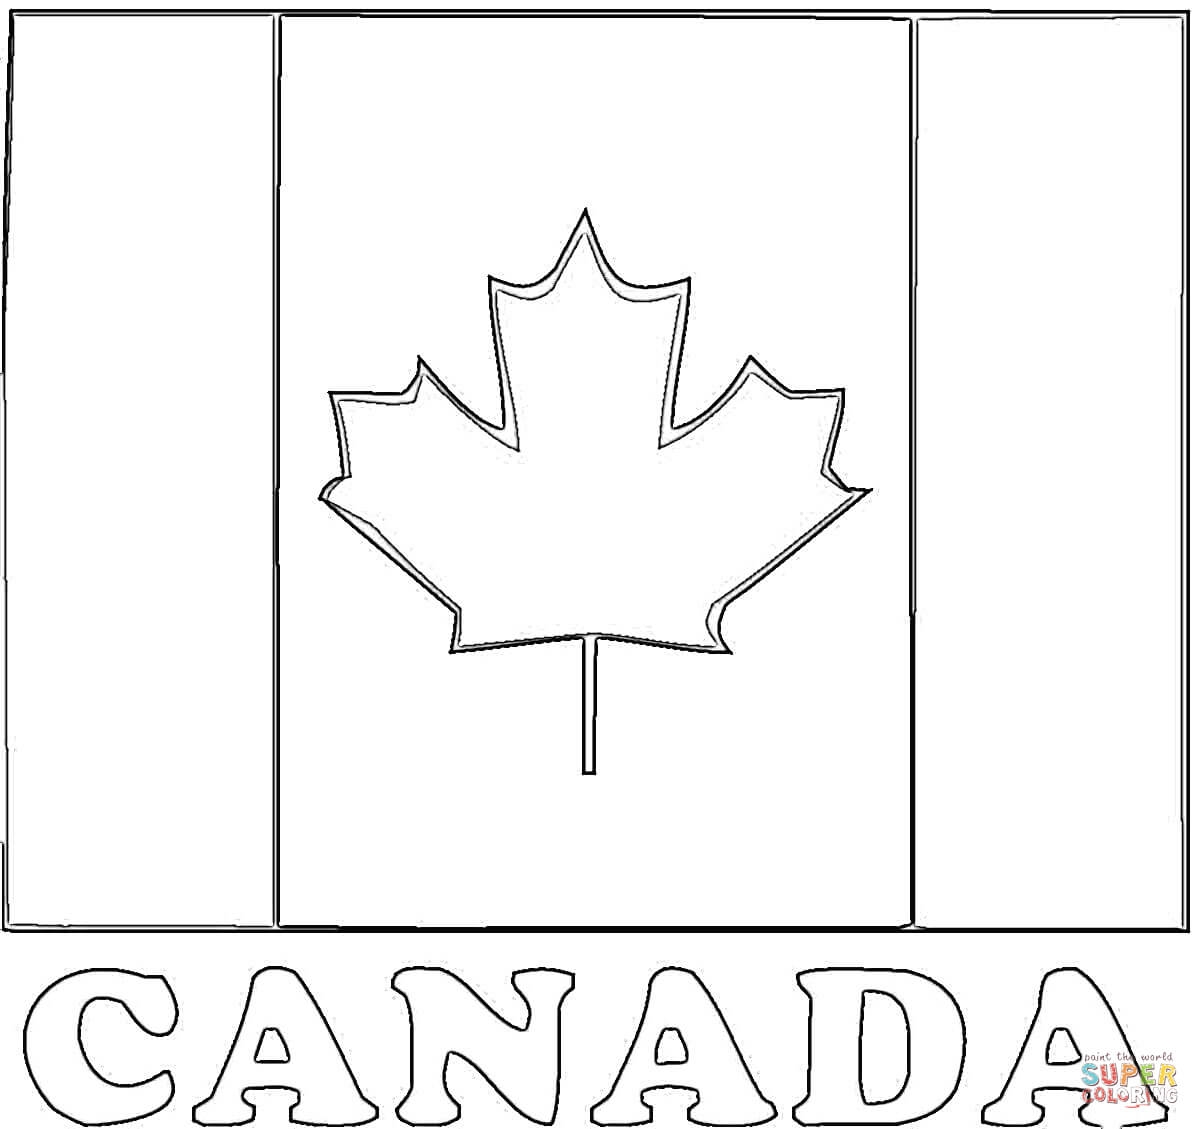 Canada Wallpaper Hd